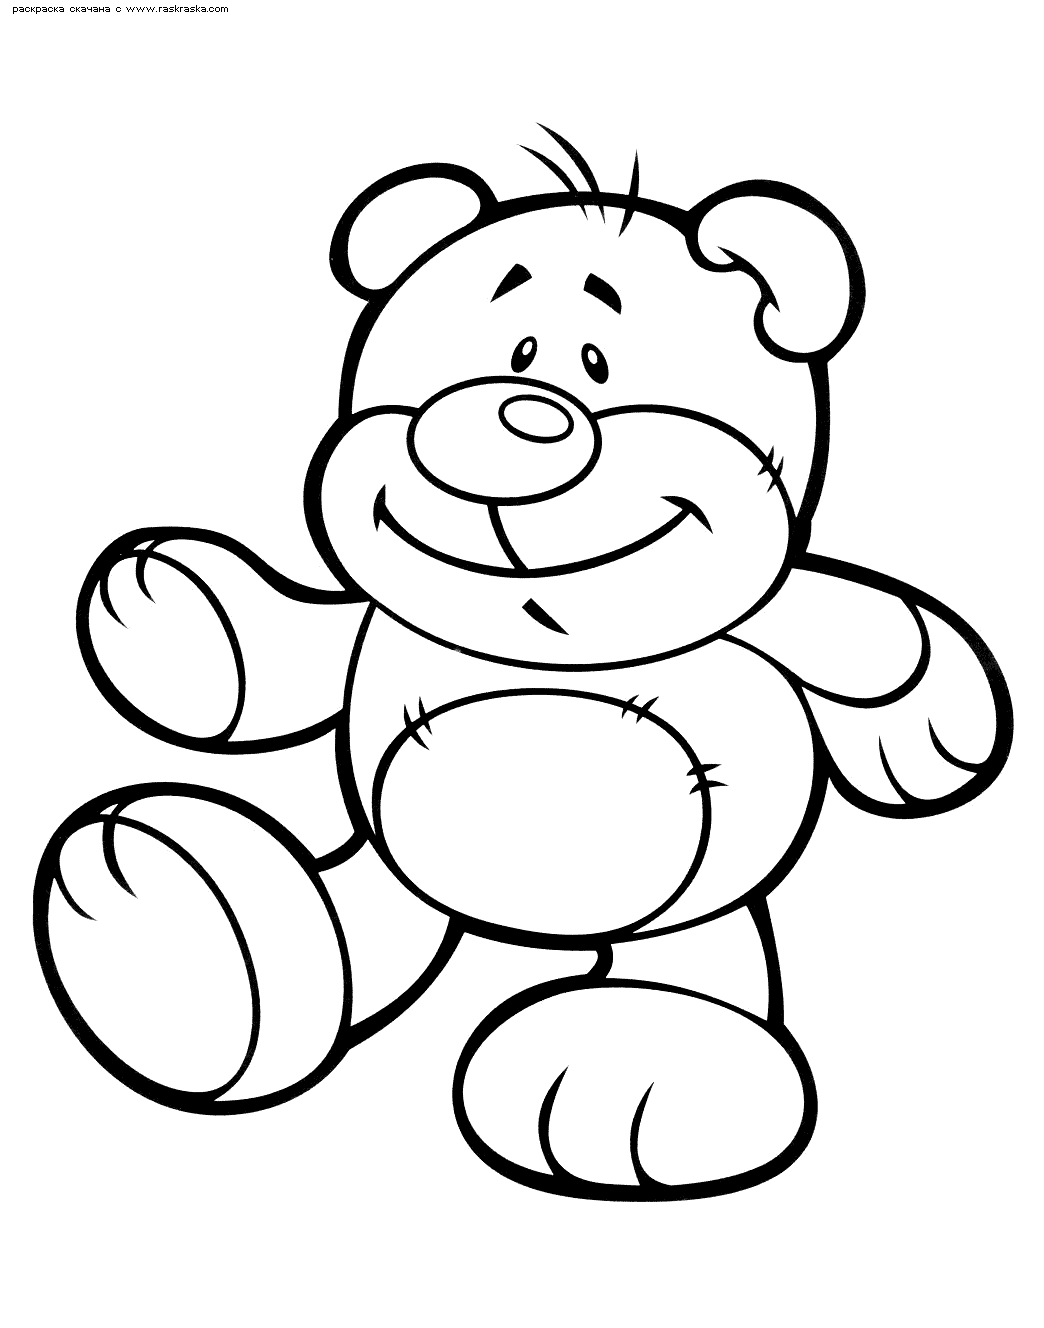 Название: Раскраска Раскраска Медвежонок. Раскраска Игрушечный медведь раскраска скачать бесплатно для детей 3 лет. Категория: . Теги: .